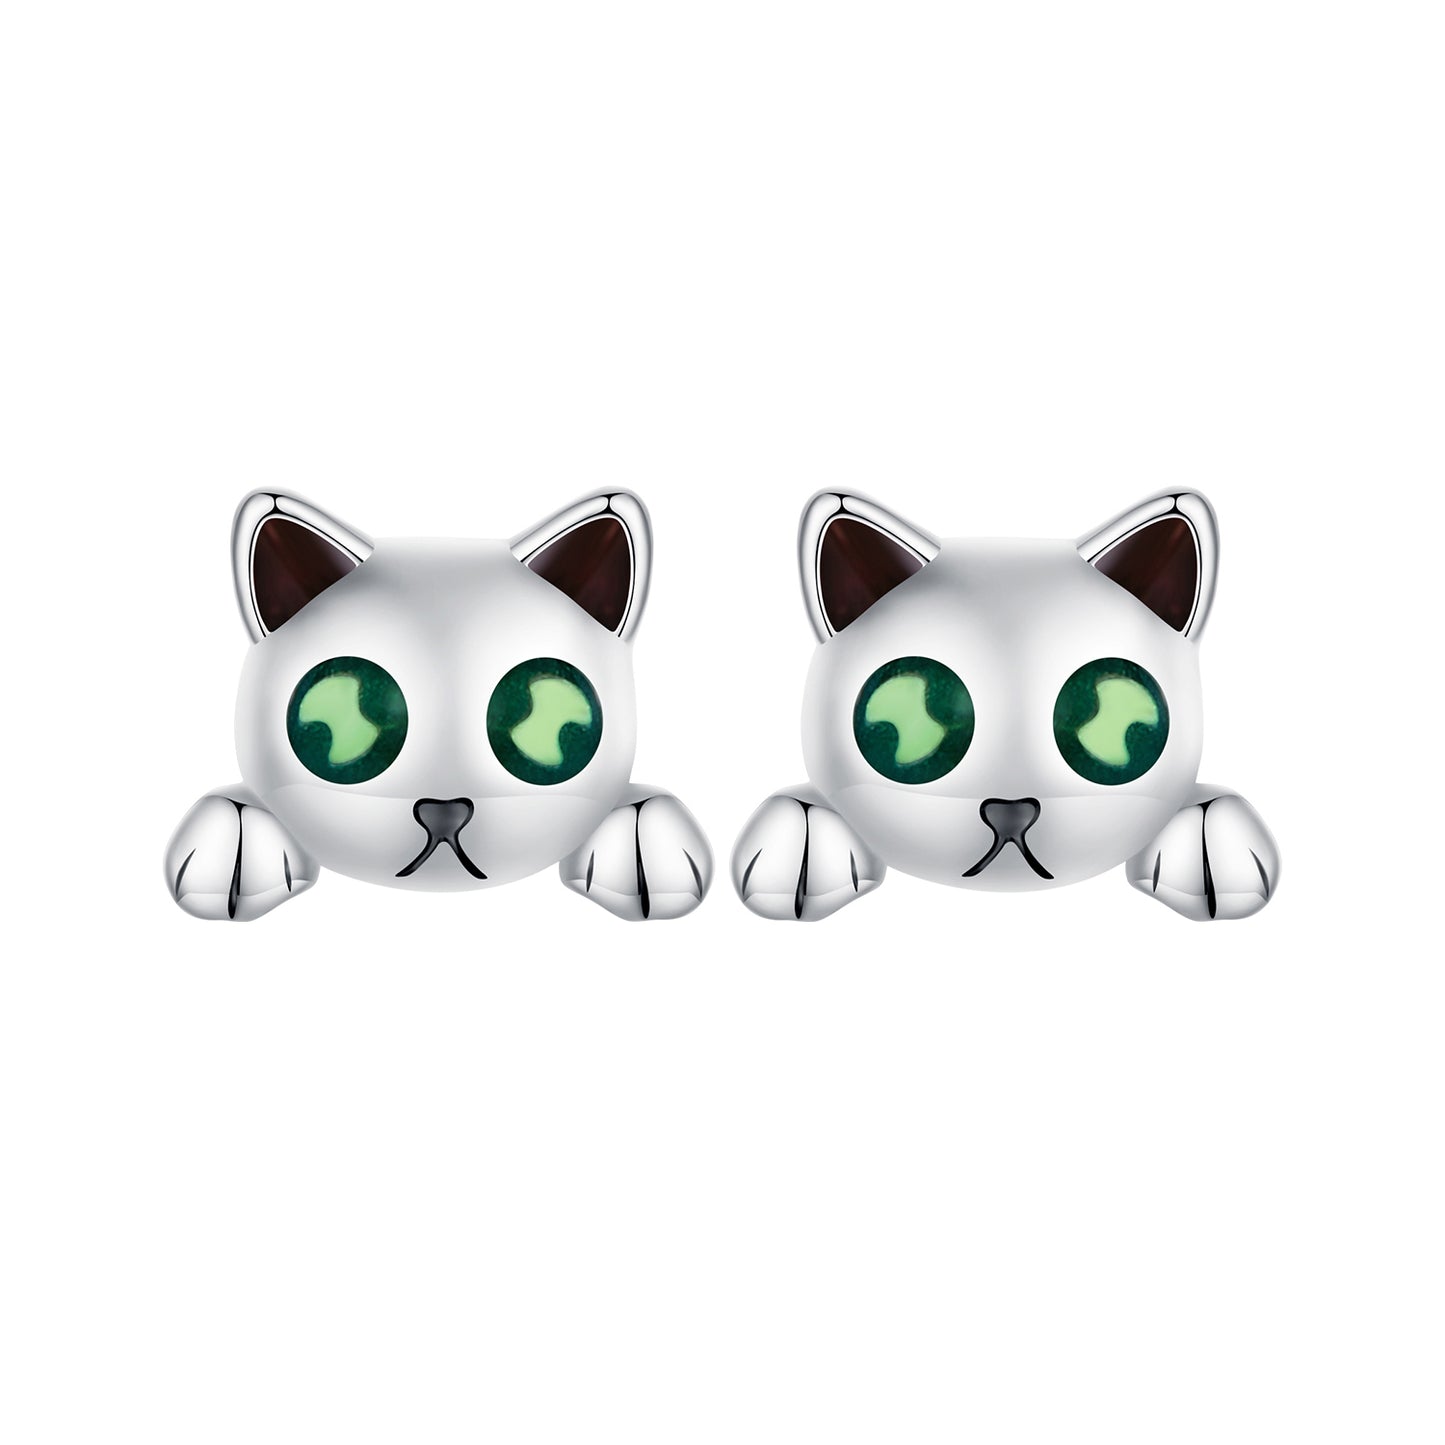 Kitty earrings,  92.5% Sterling Silver,  Luminous stone ear stud